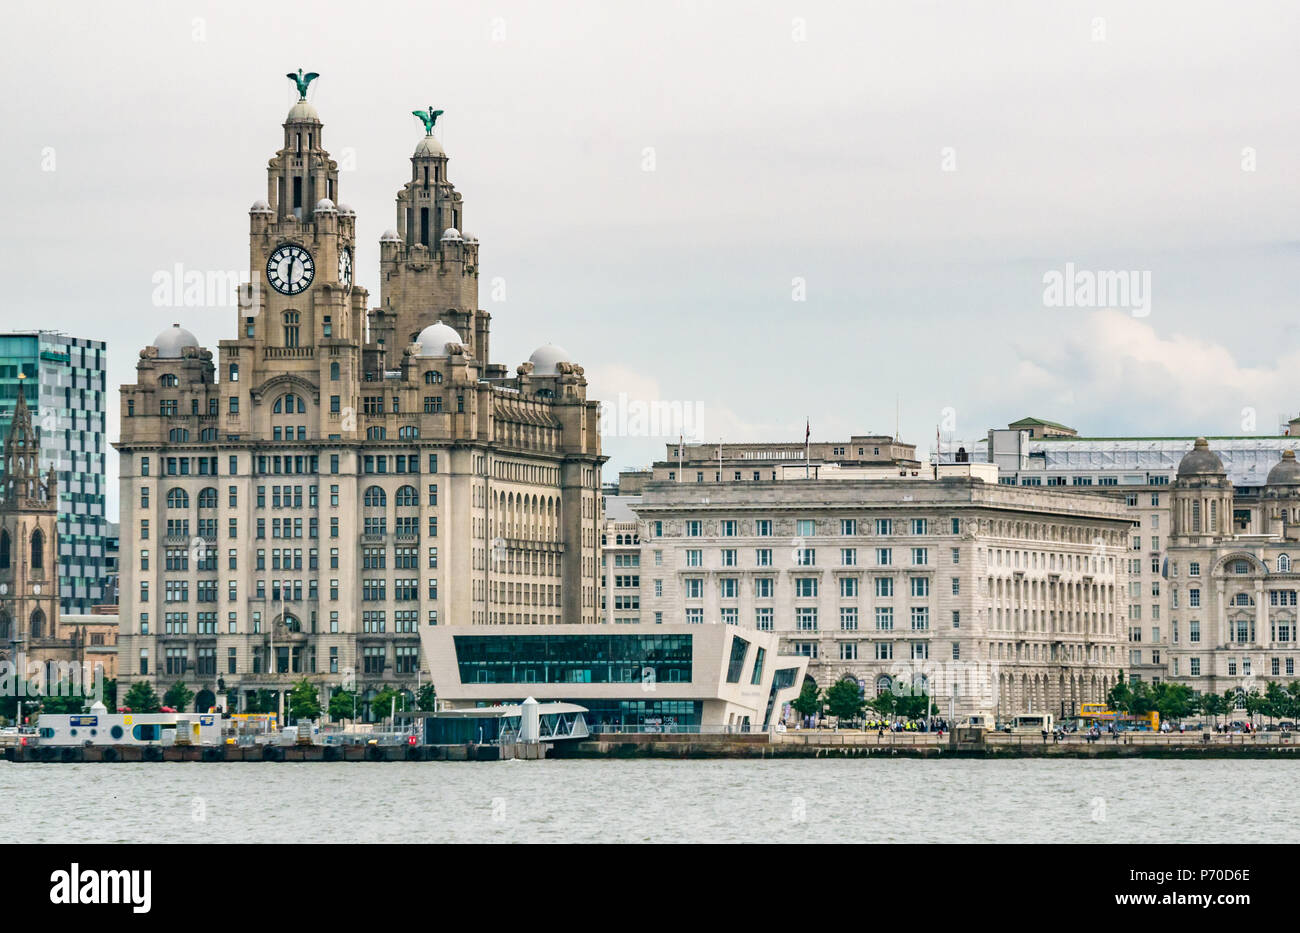 Die drei Grazien, der Hafen von Liverpool Gebäude, Cunard Building, Royal Liver Building und modernes Museum von Liverpool, Pier Head, Liverpool, England, UK Stockfoto